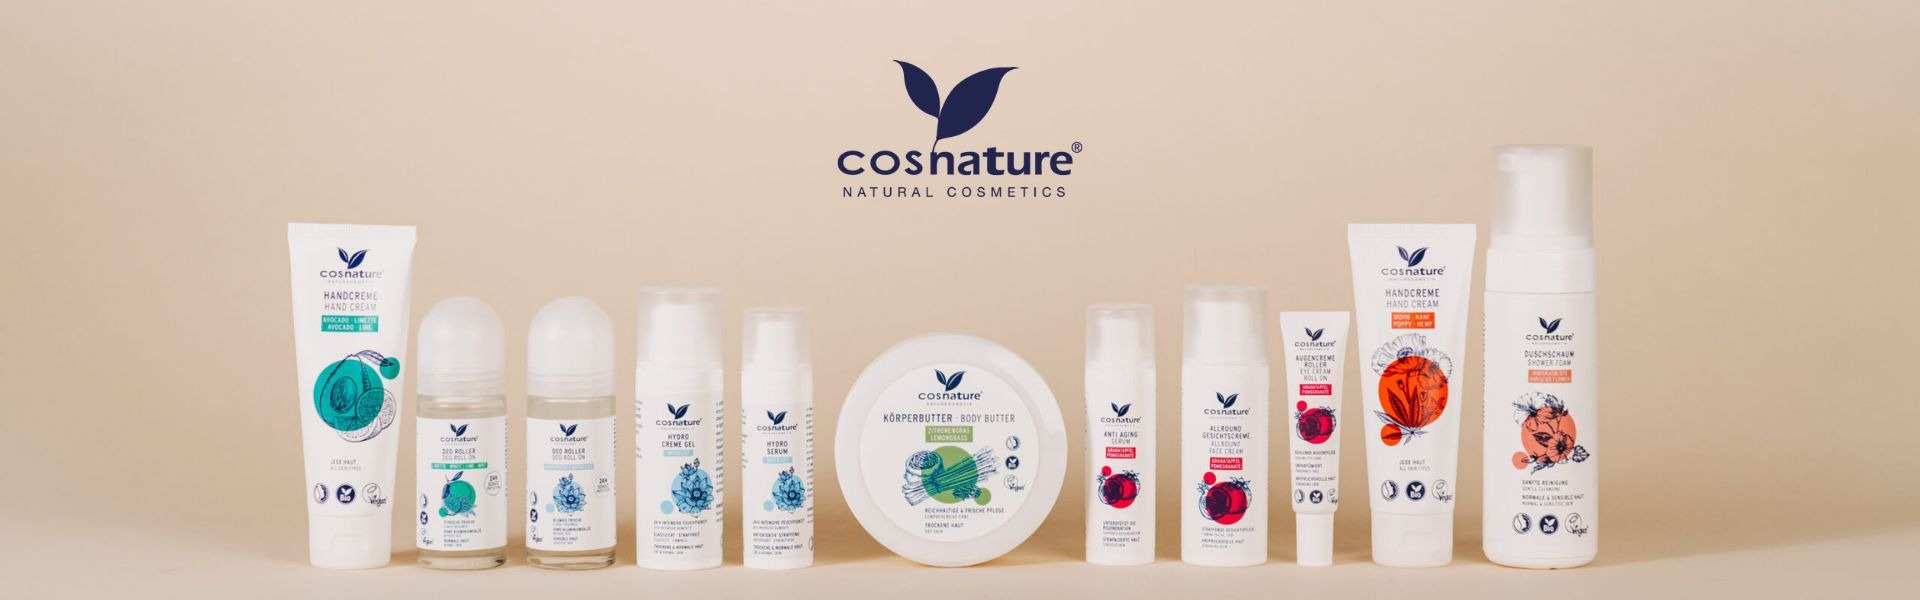 Cosnature: cosmética natural, precios asequibles